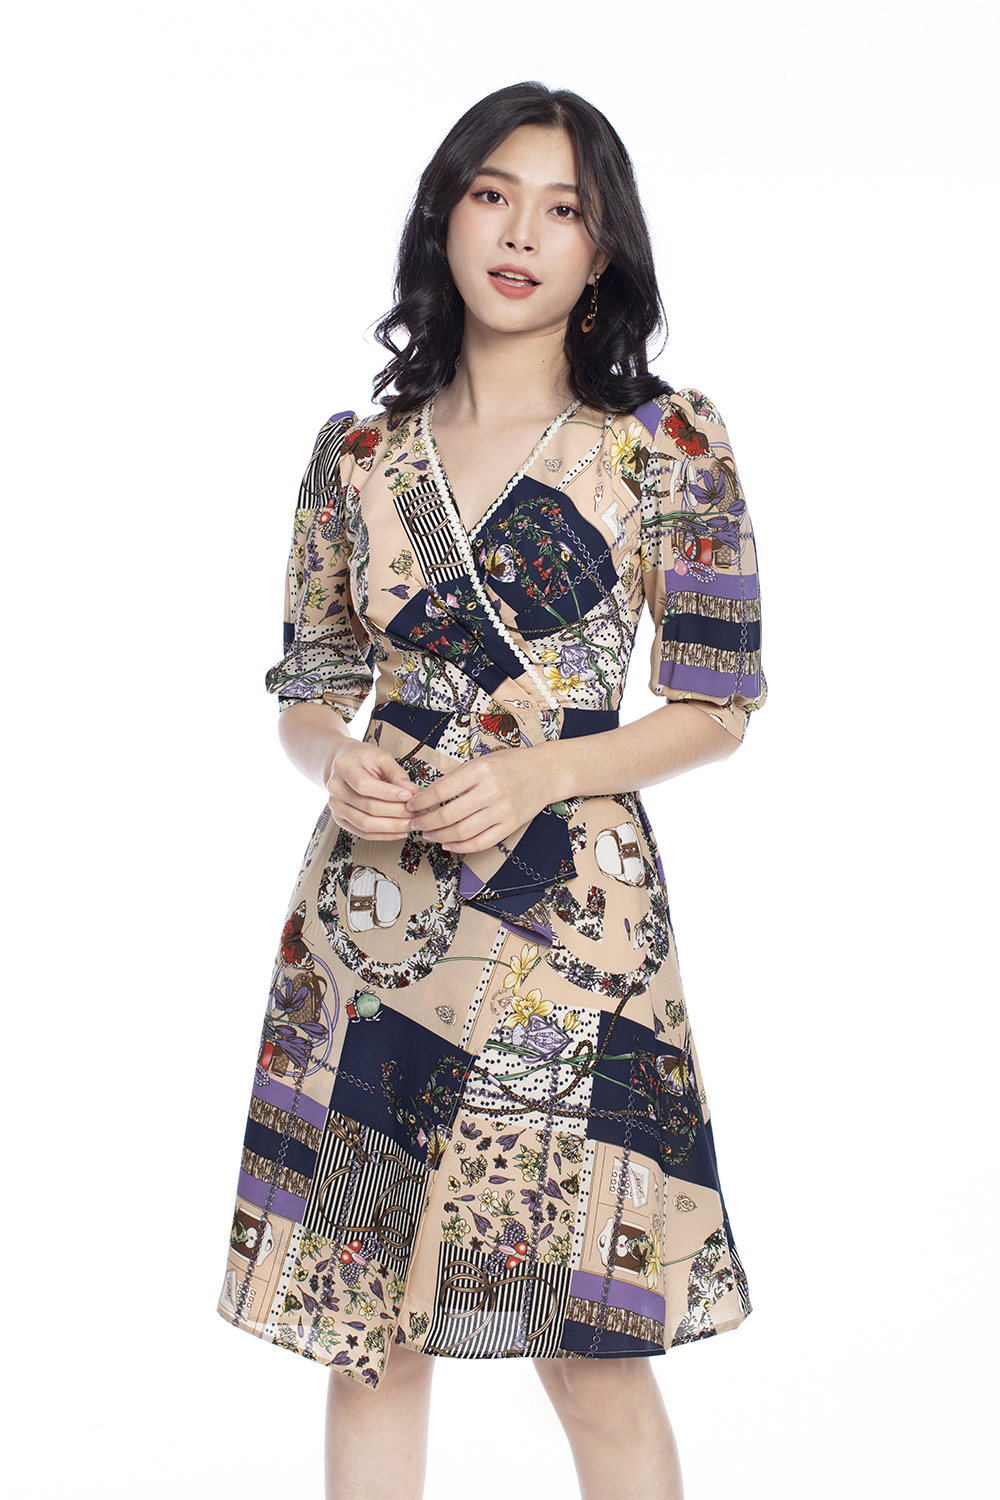 Đầm họa tiết cổ V tùng váy đắp xéo KK99-20 | Thời trang công sở ...